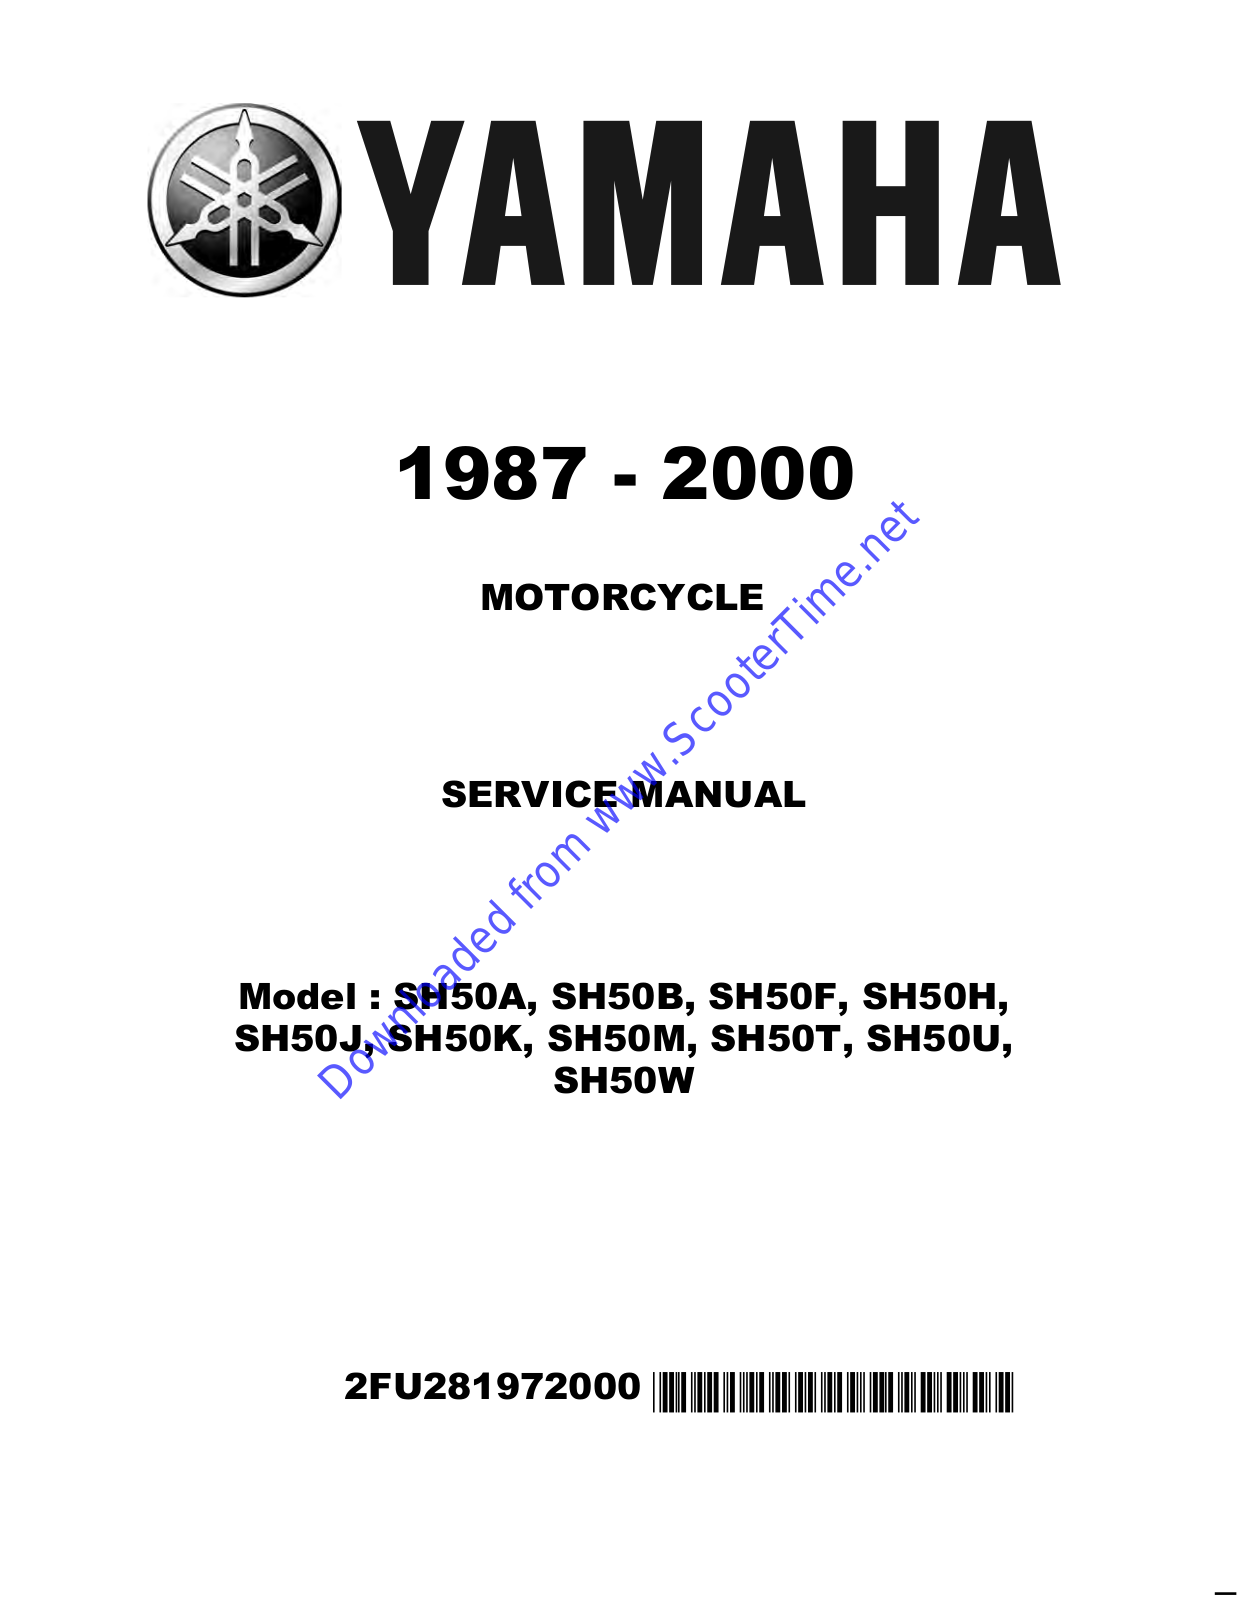 Yamaha SH50K, SH50M, SH50T, SH50U, SH50W Service Manual